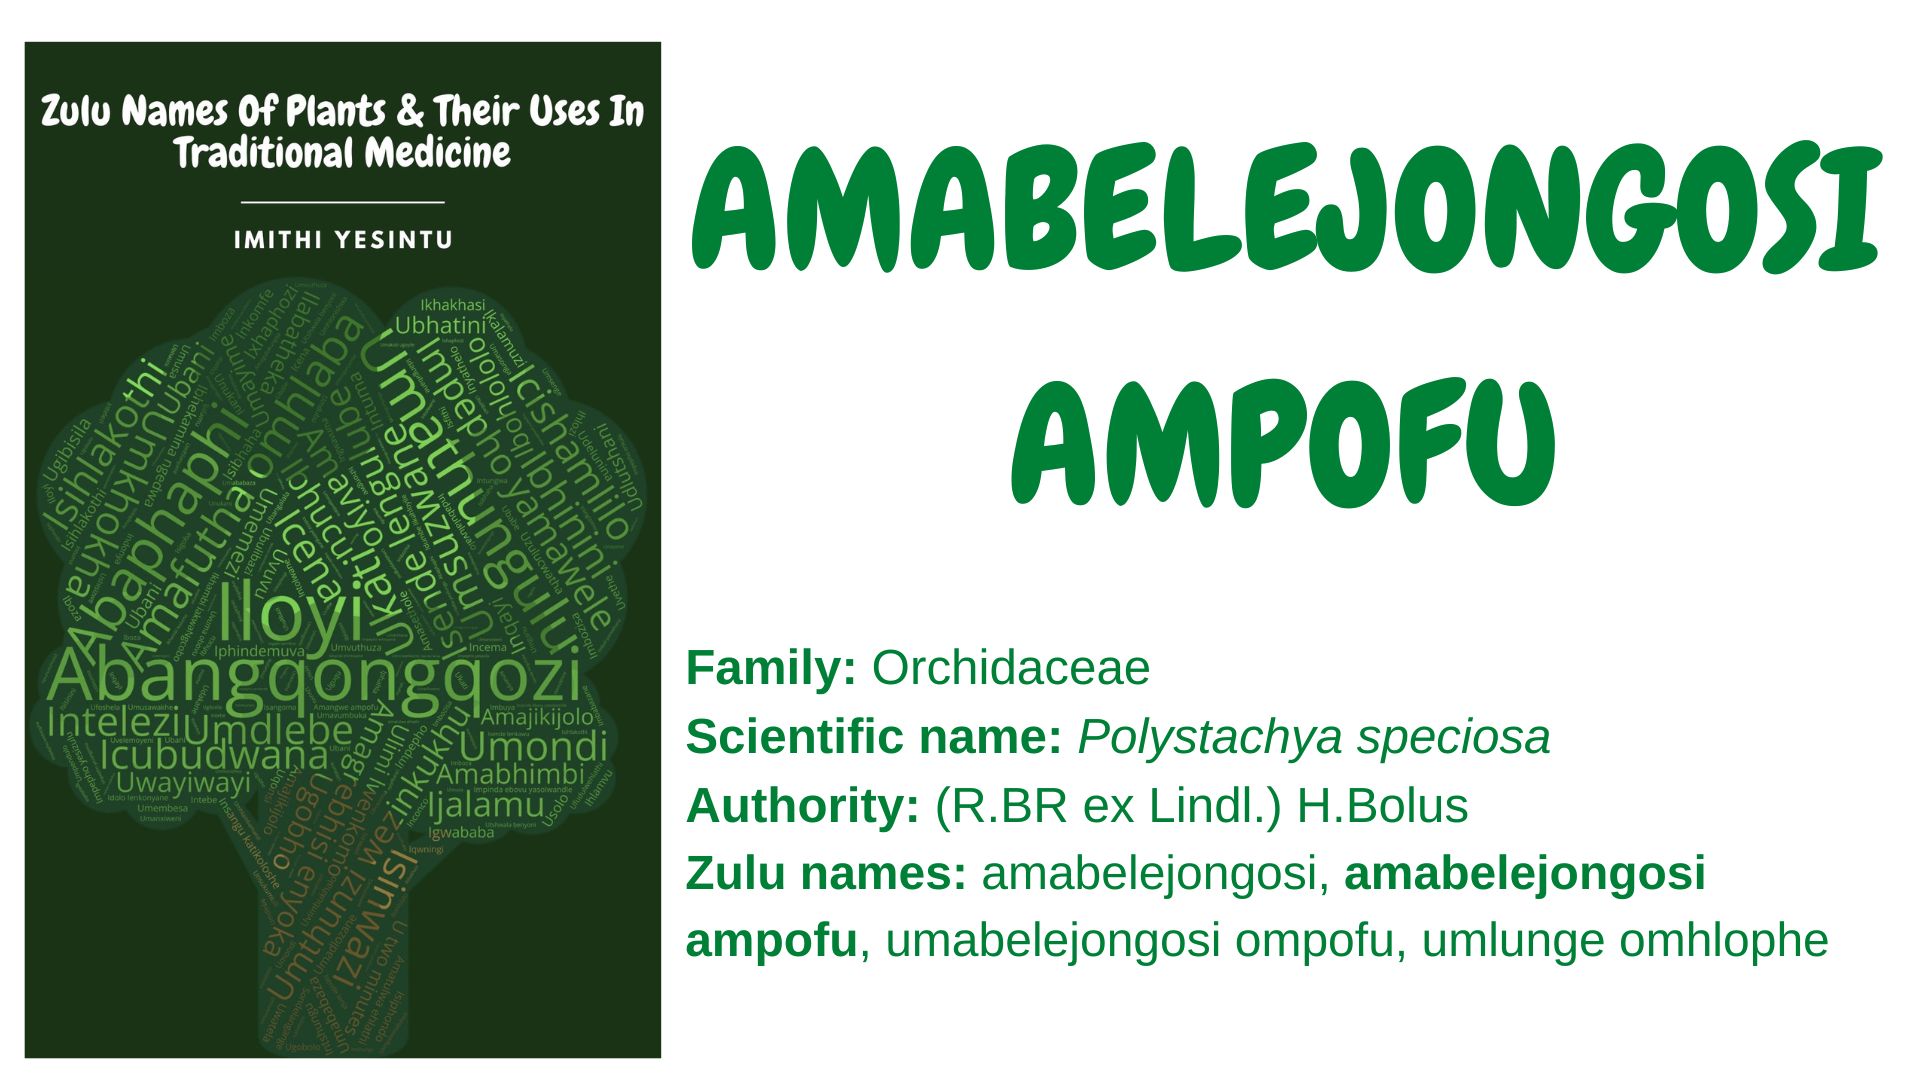 You are currently viewing Amabelejongosi ampofu